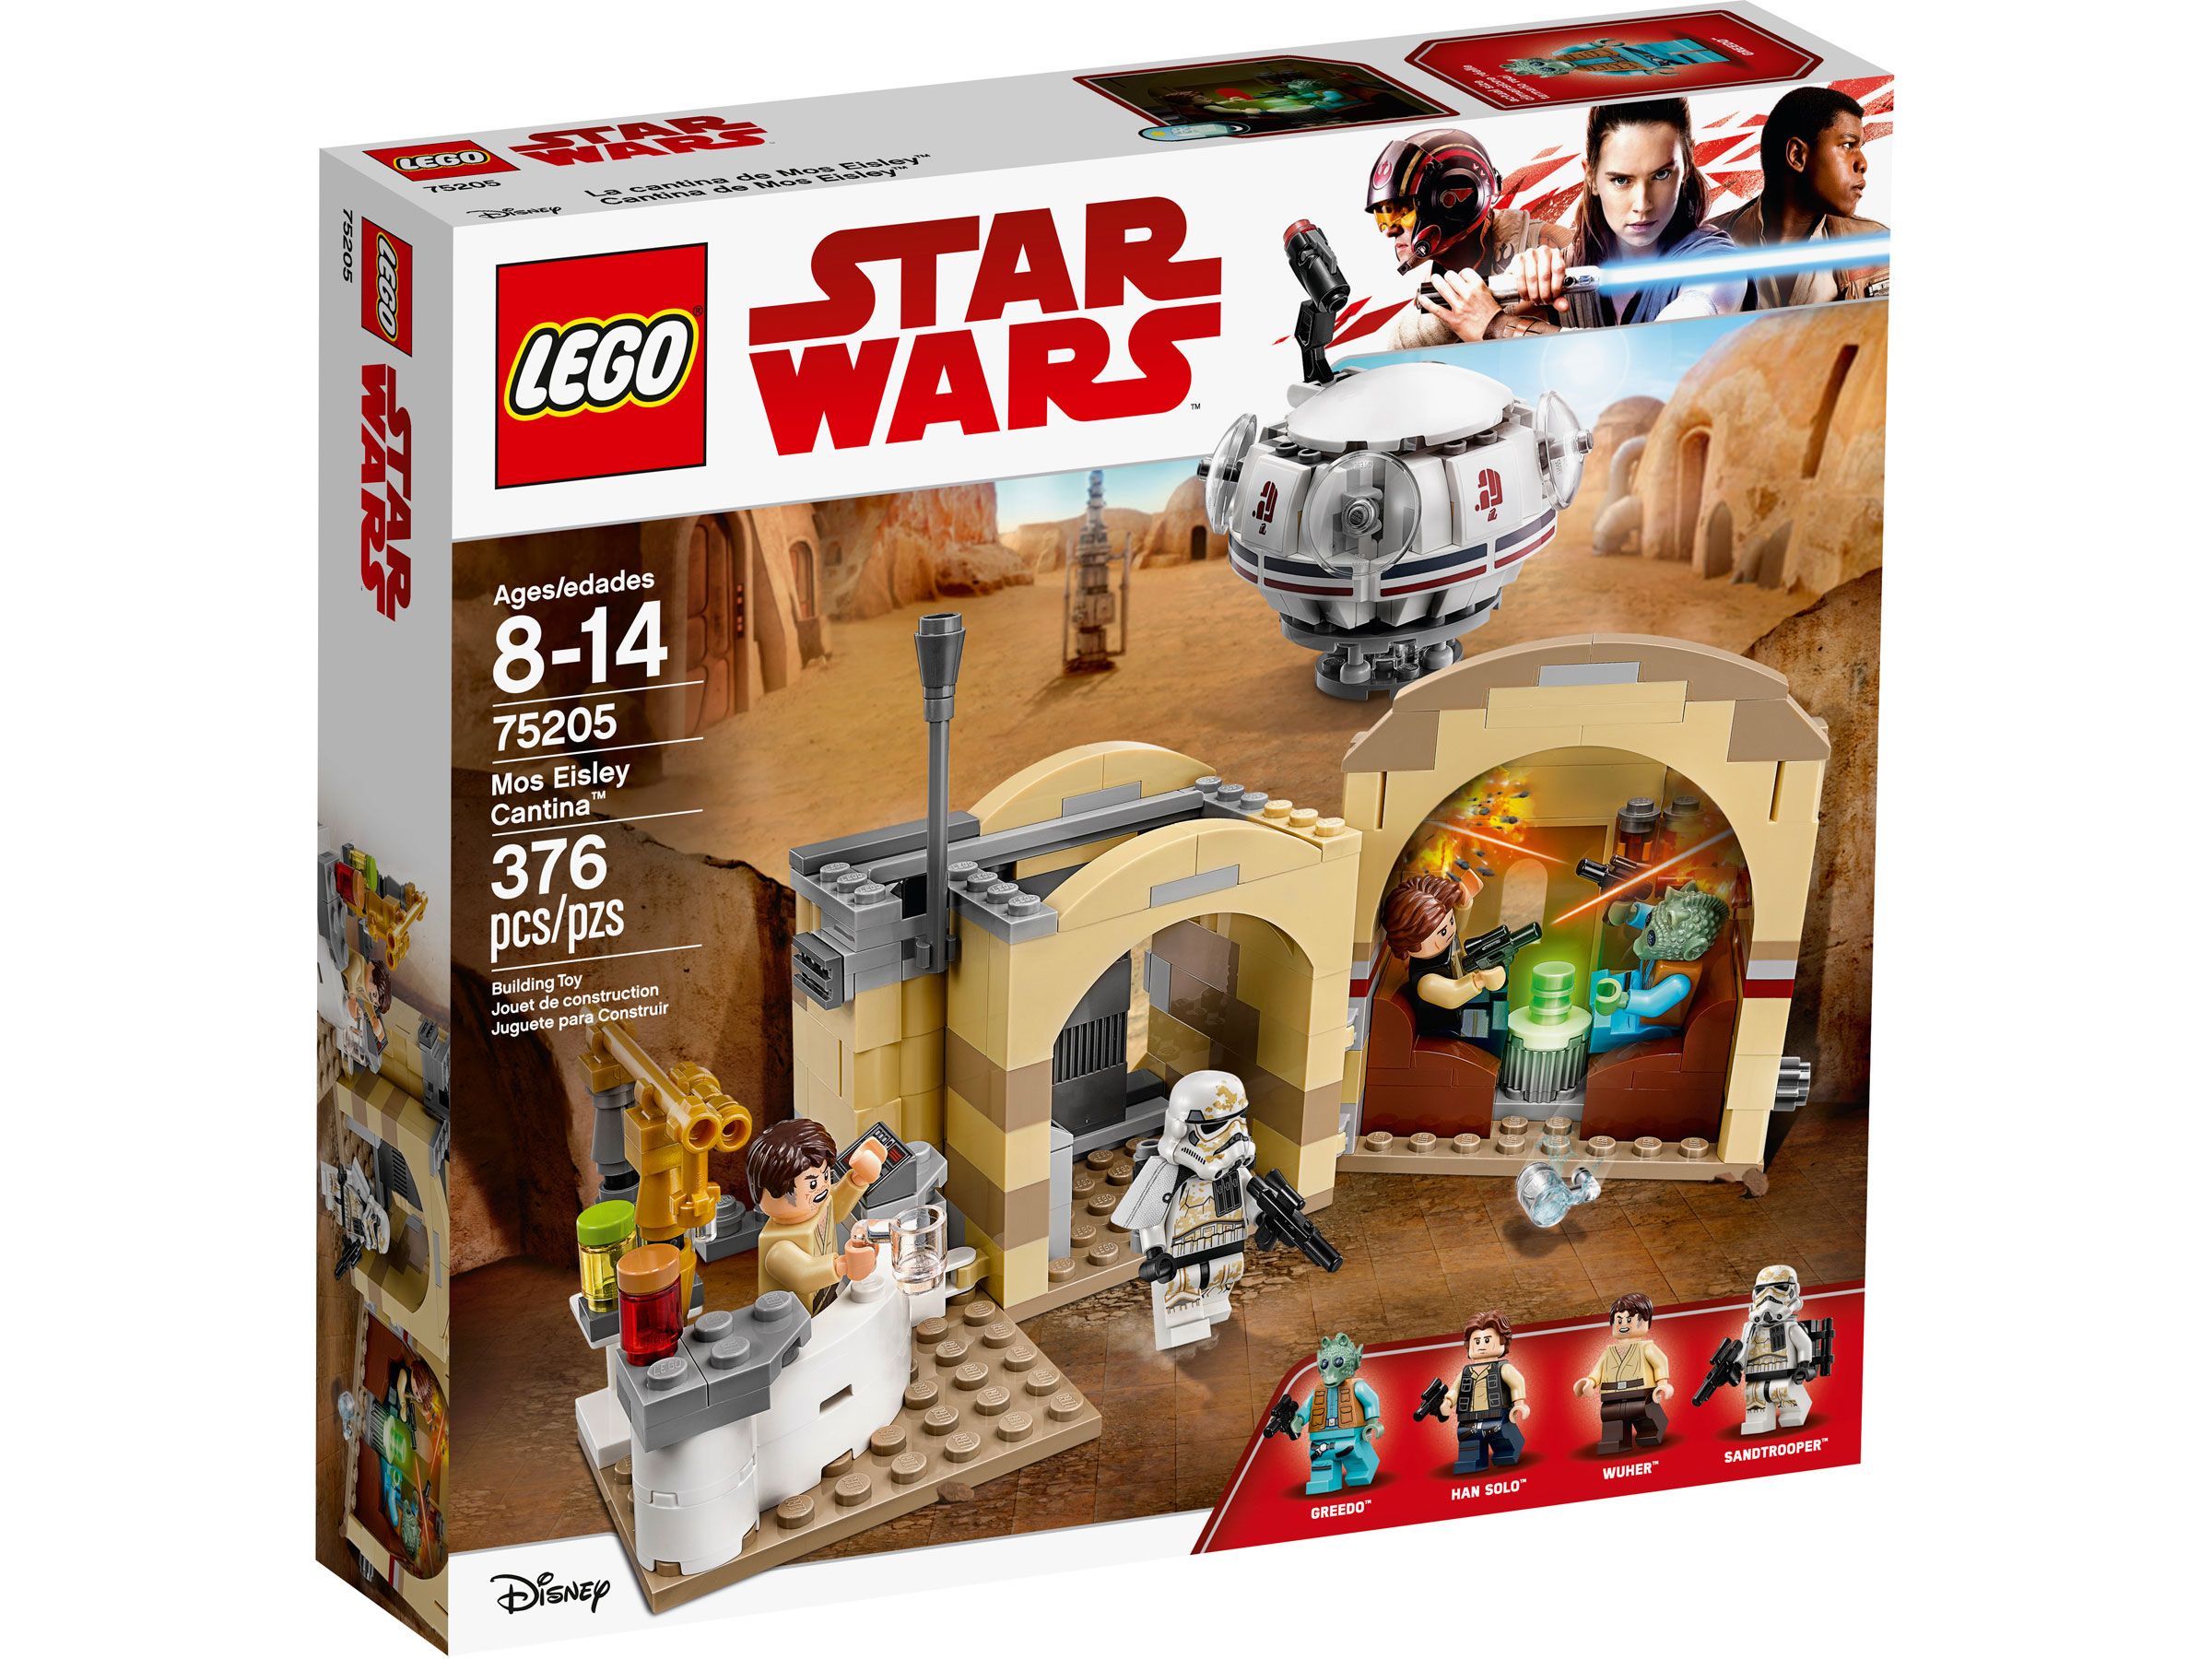 LEGO Star Wars 75205 Mos Eisley Cantina™ LEGO_75205_Box1_v39.jpg